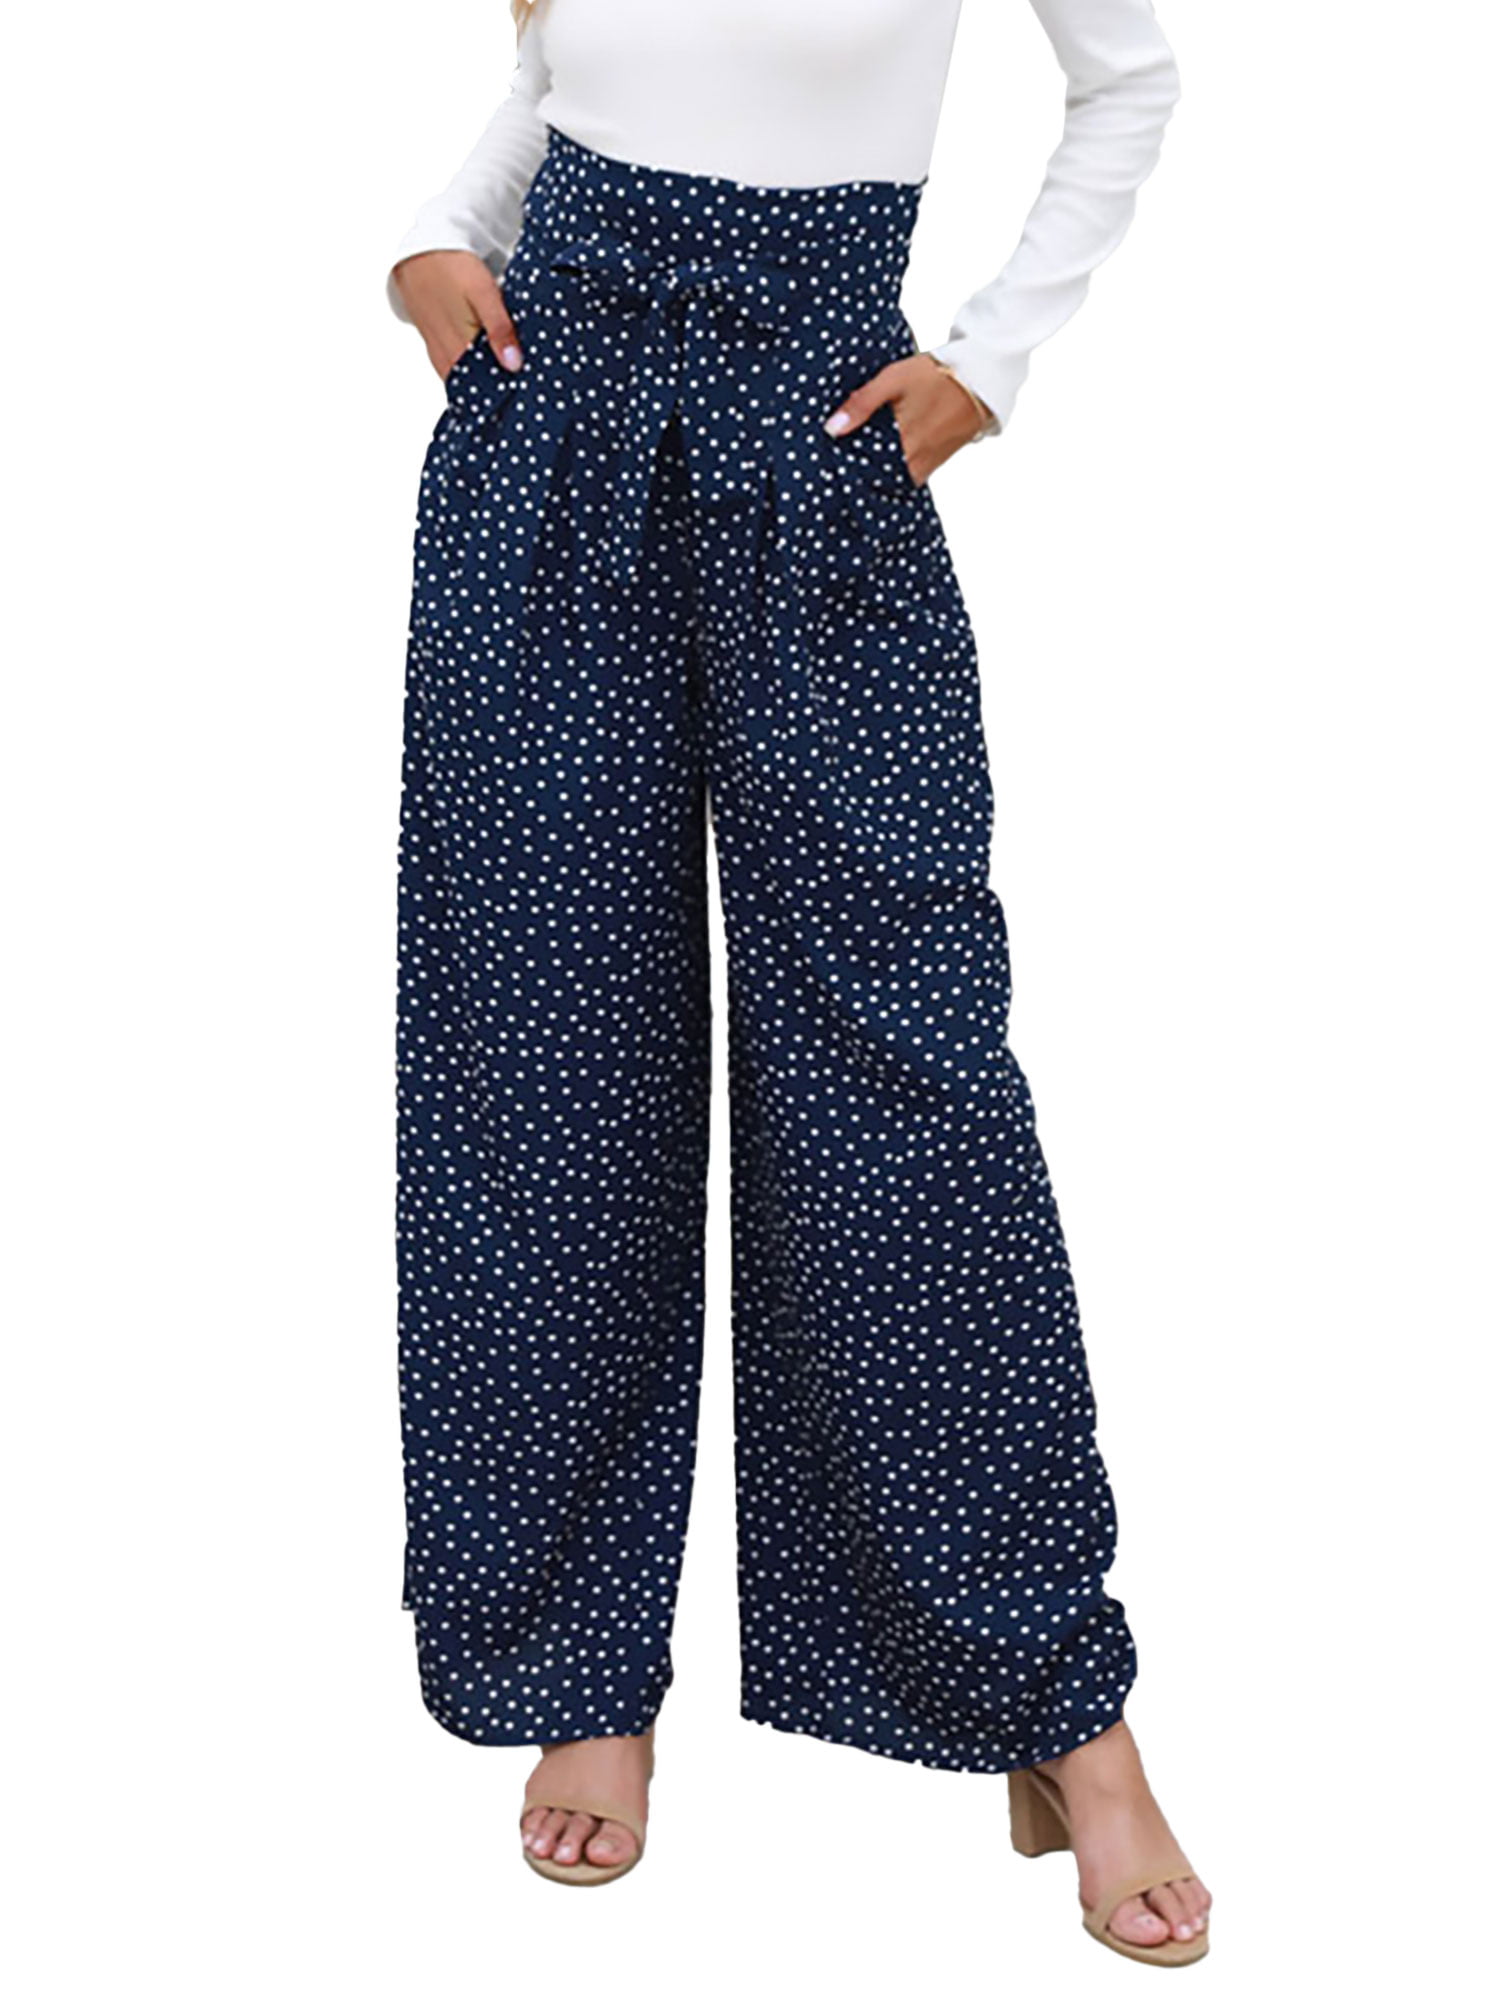 Navy Blue Polka Dot Pants Outfit | lupon.gov.ph